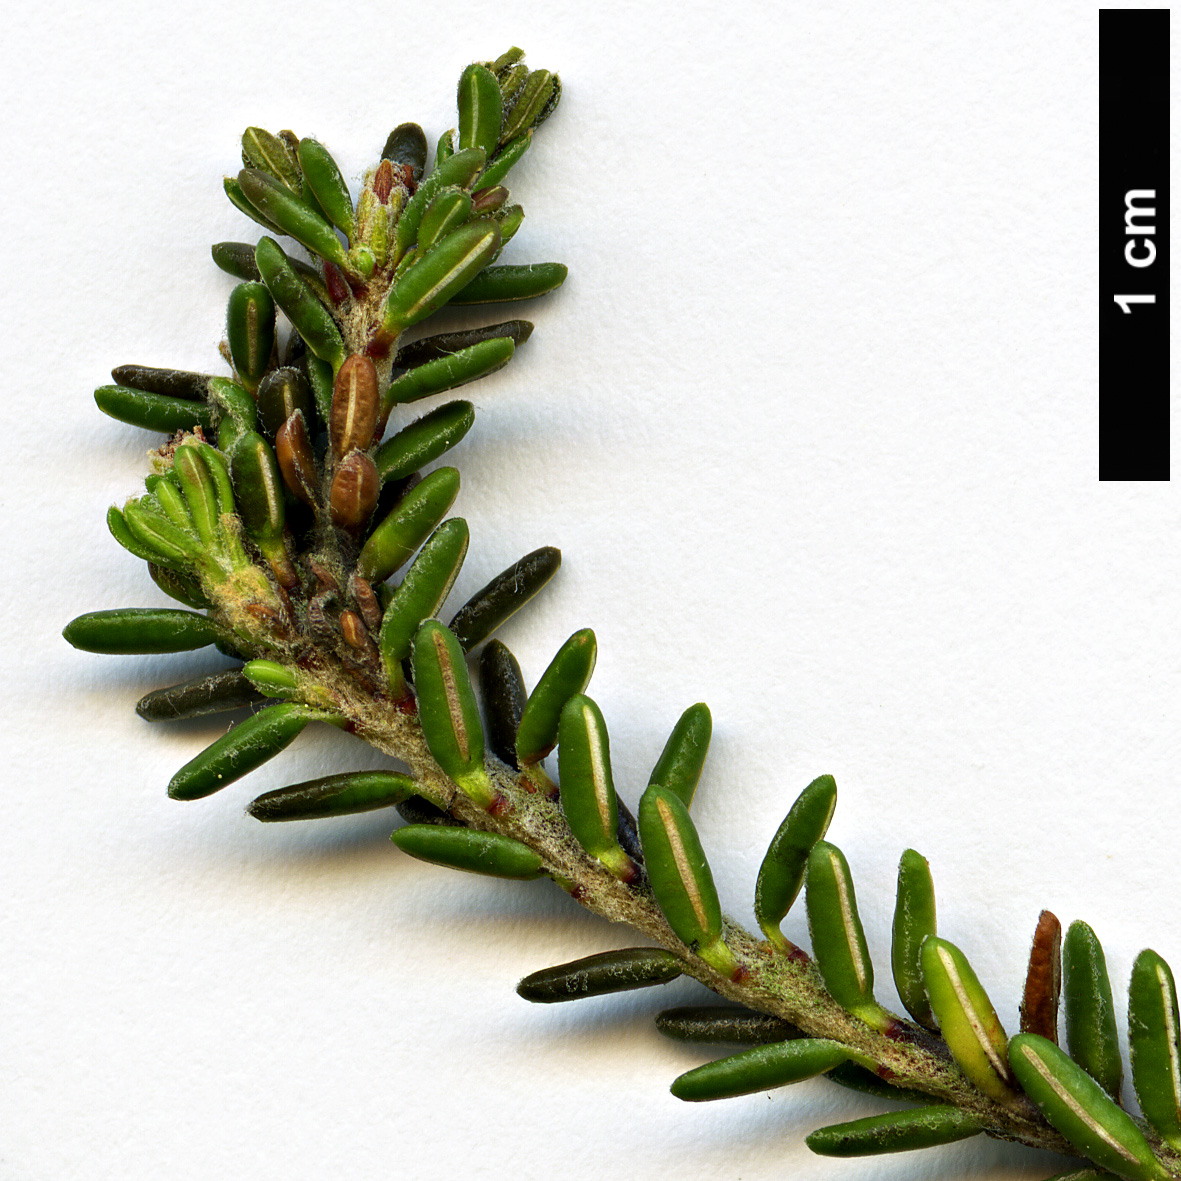 High resolution image: Family: Ericaceae - Genus: Empetrum - Taxon: eamesii